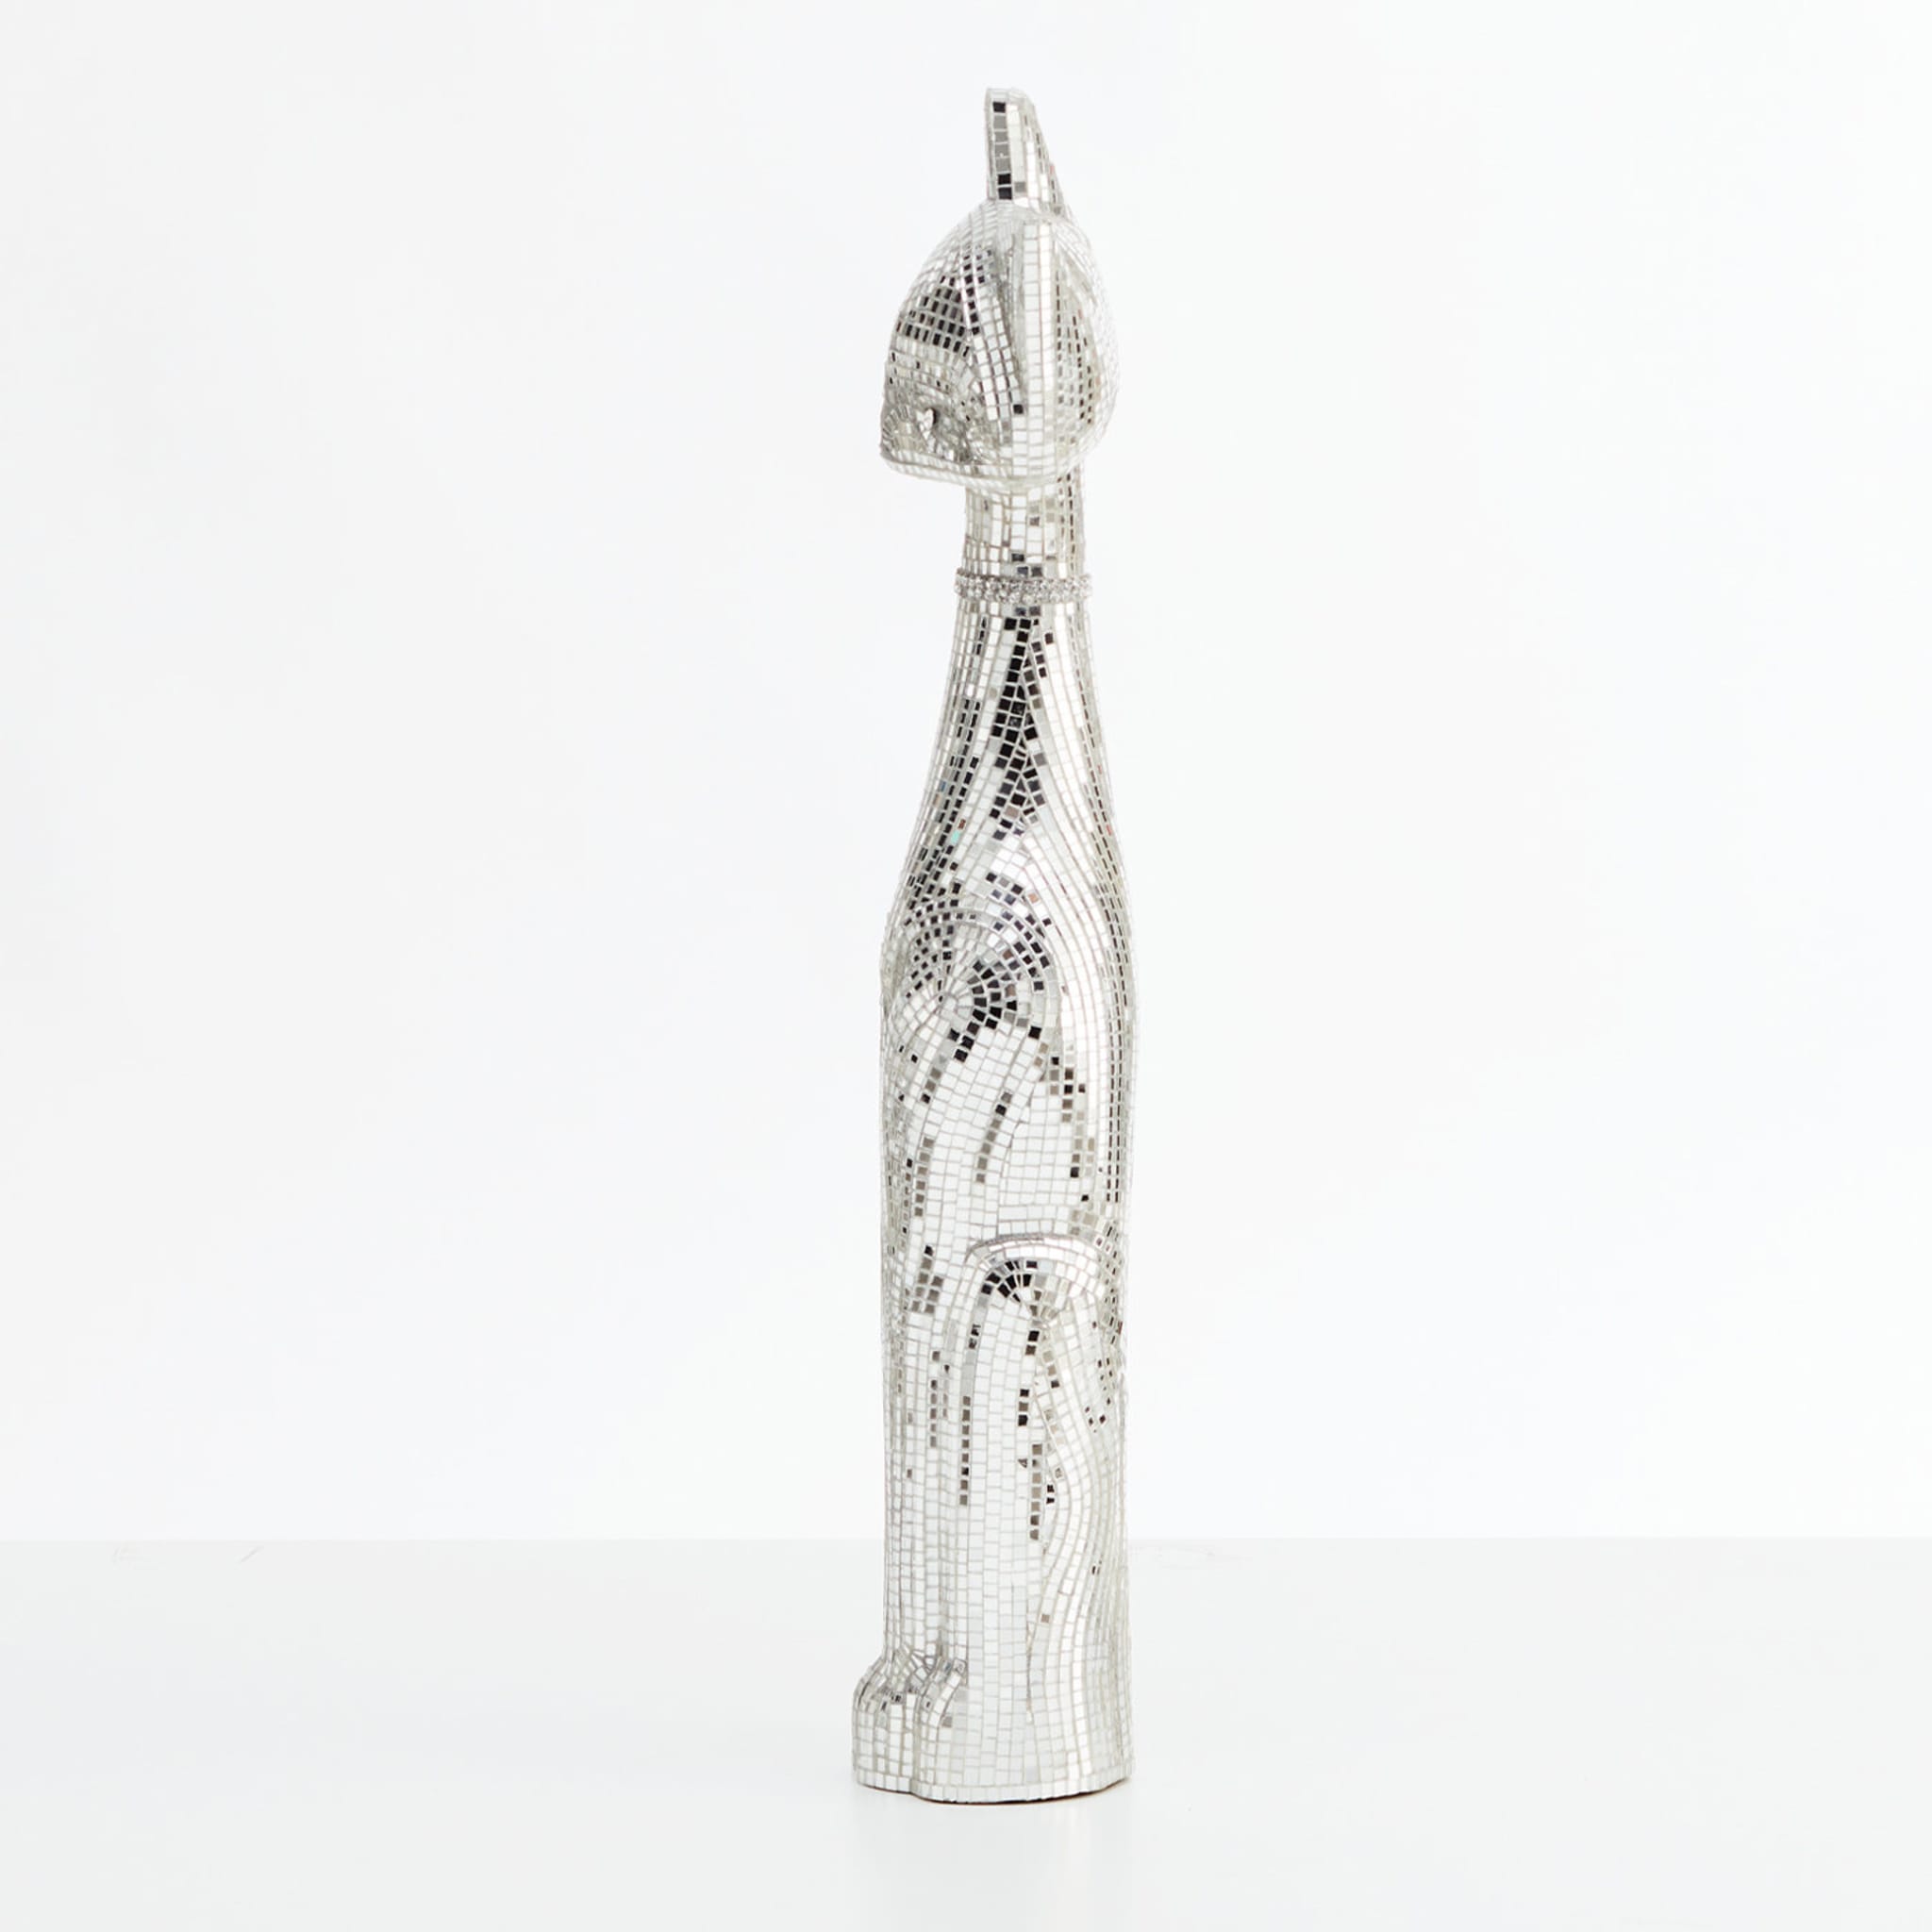 Gatto Silver Small Sculpture - Alternative view 3